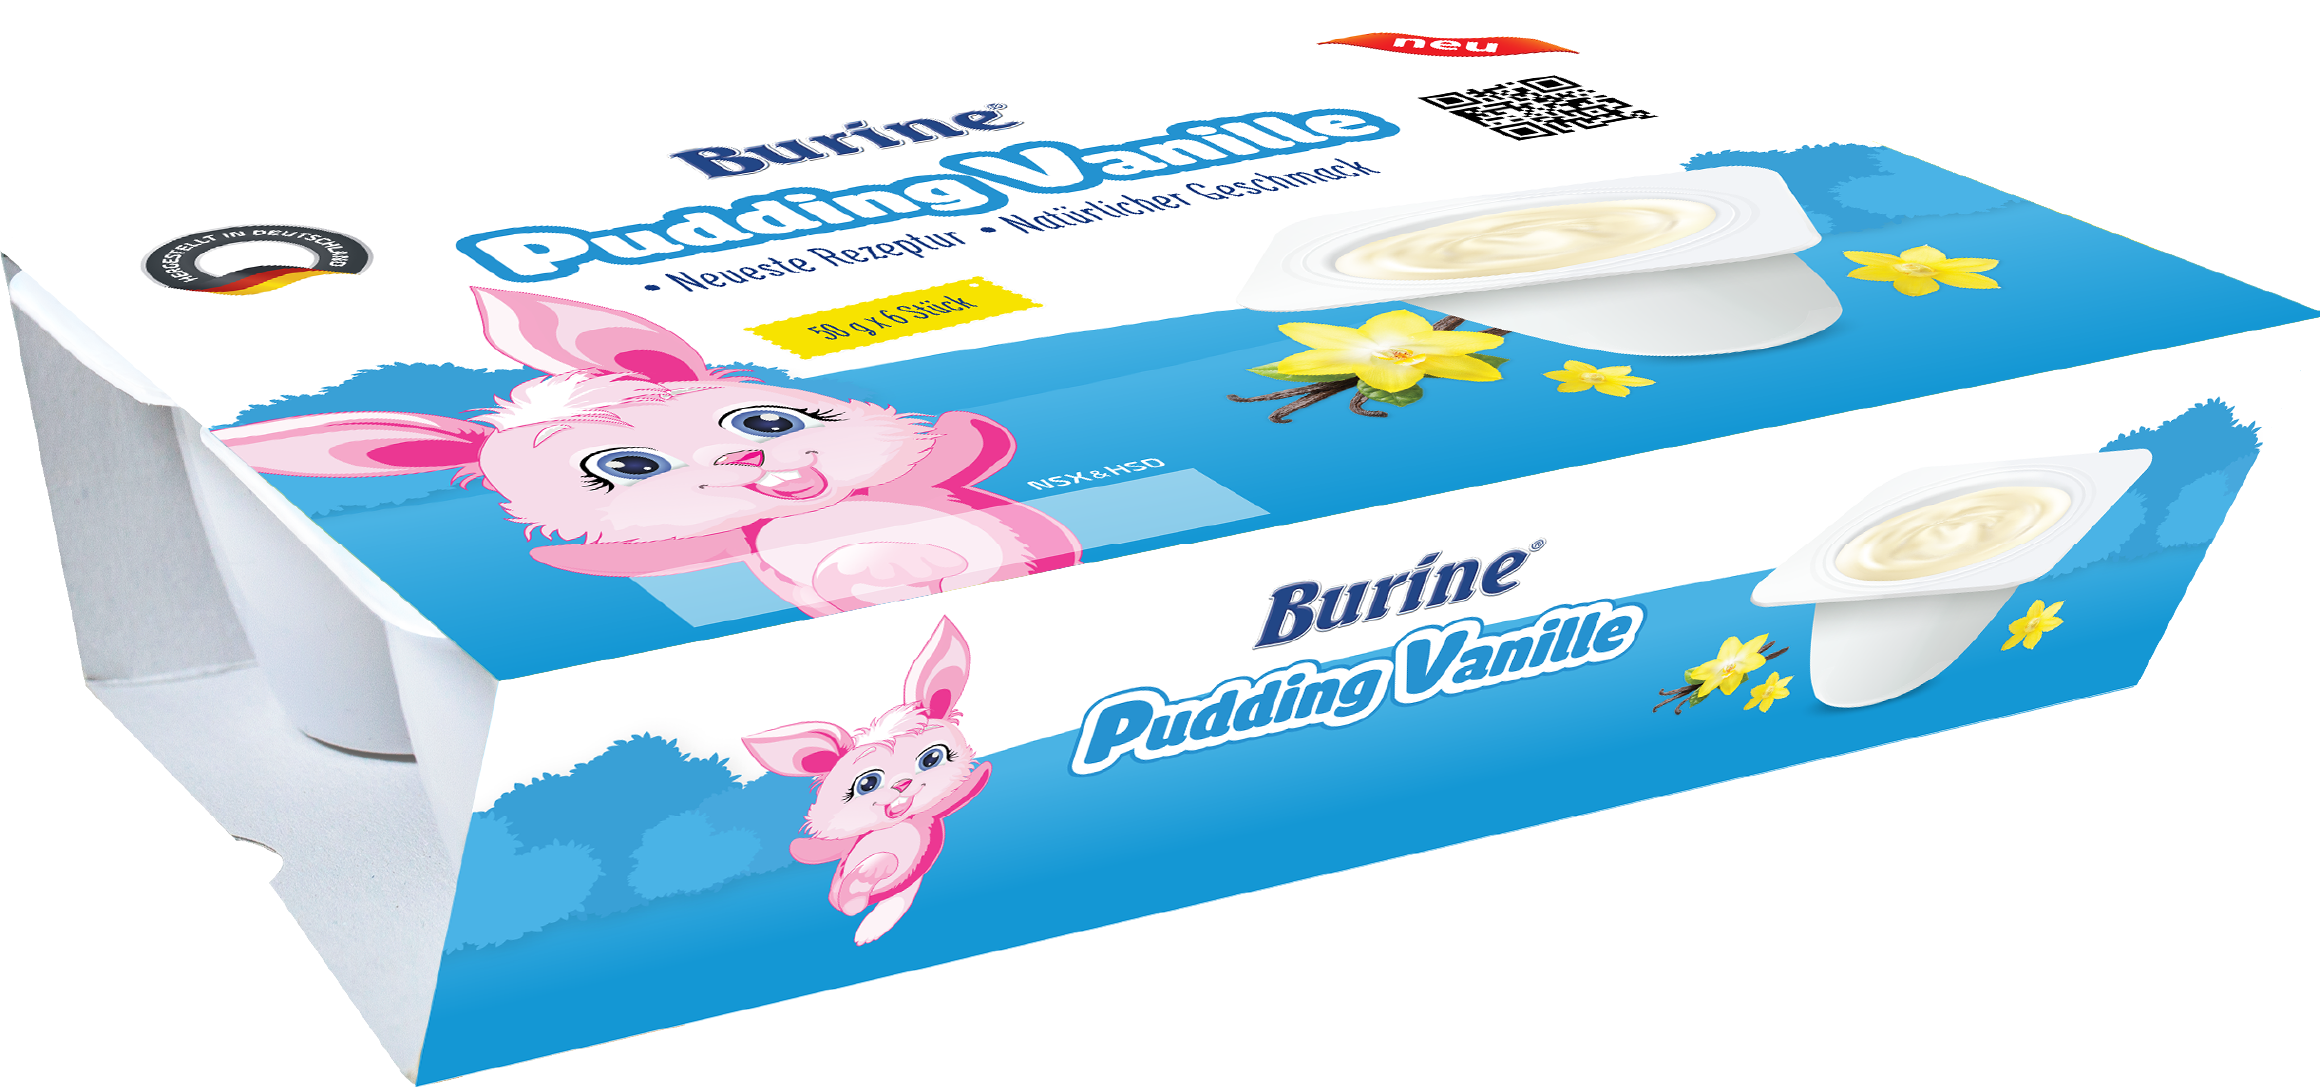 [quà tặng hot] pudding ăn dặm burine dành cho bé từ 6 tháng tuổi - nhập khẩu 100% từ đức - lốc 6 hũ x 50g 2